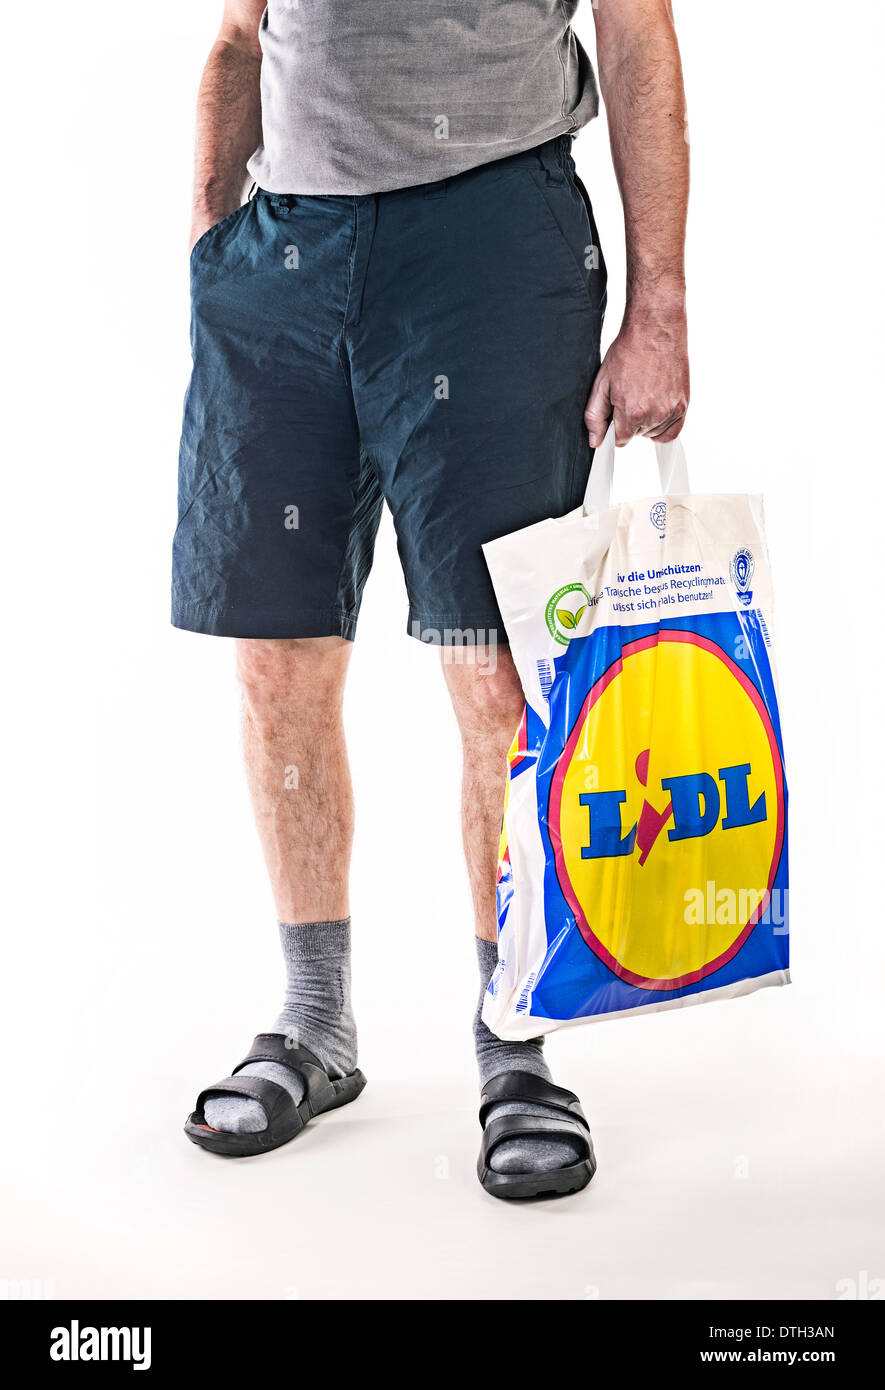 Unterkörper von einem Mann mit kurzen Hosen, mit einer Plastiktüte Lebensmittel-Discounters Lidl. Stockfoto